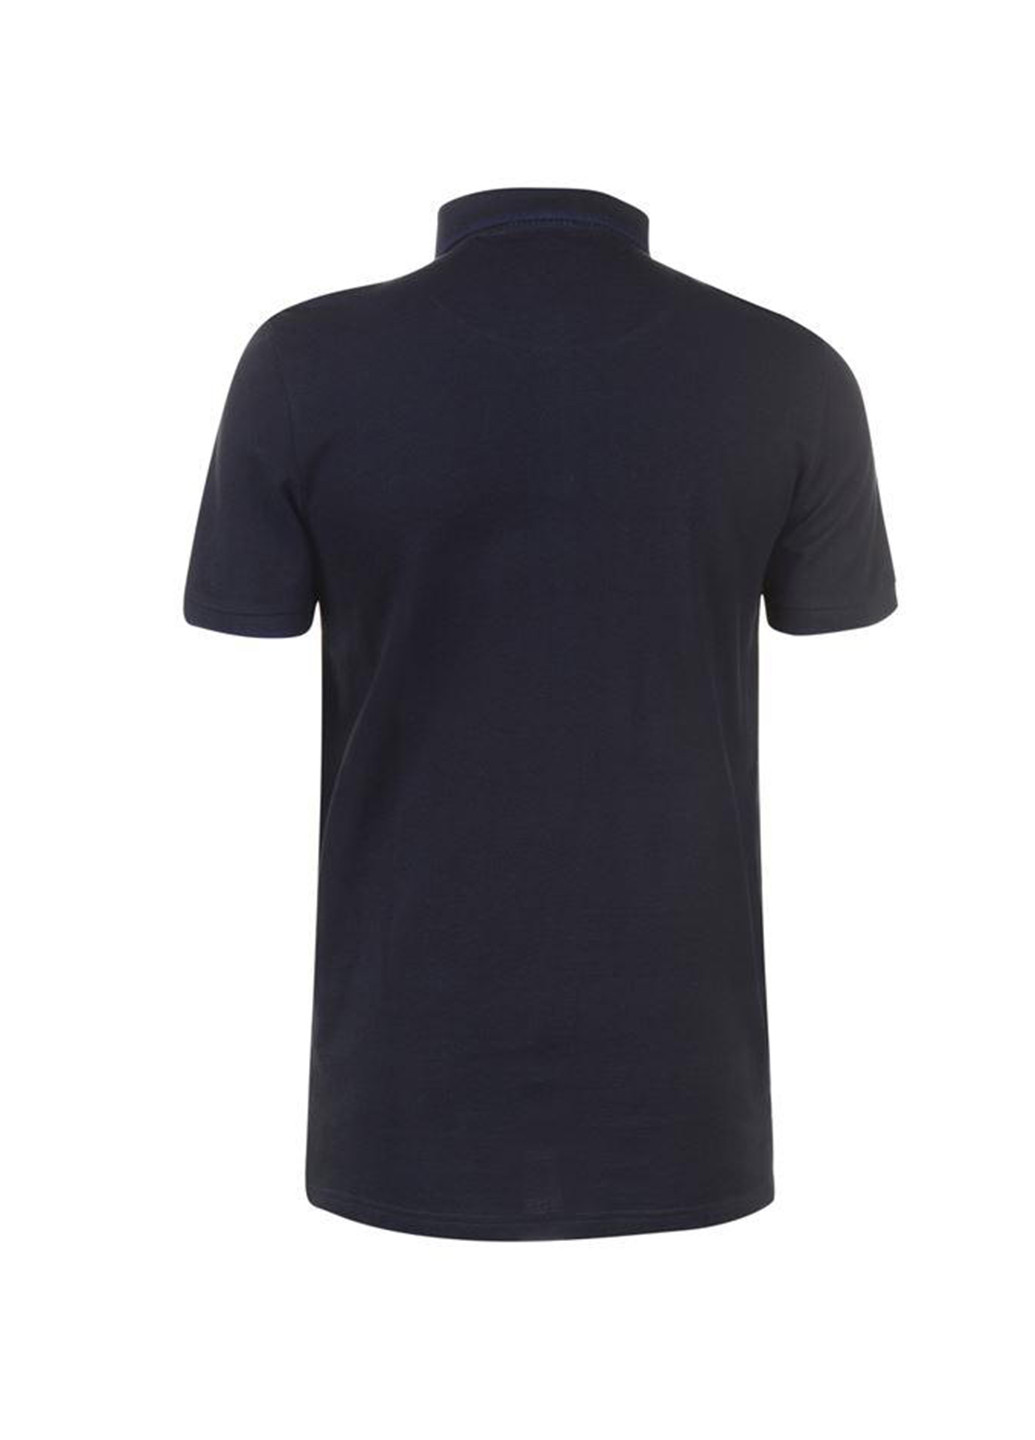 Темно-синяя футболка-поло для мужчин Soulcal & Co однотонная